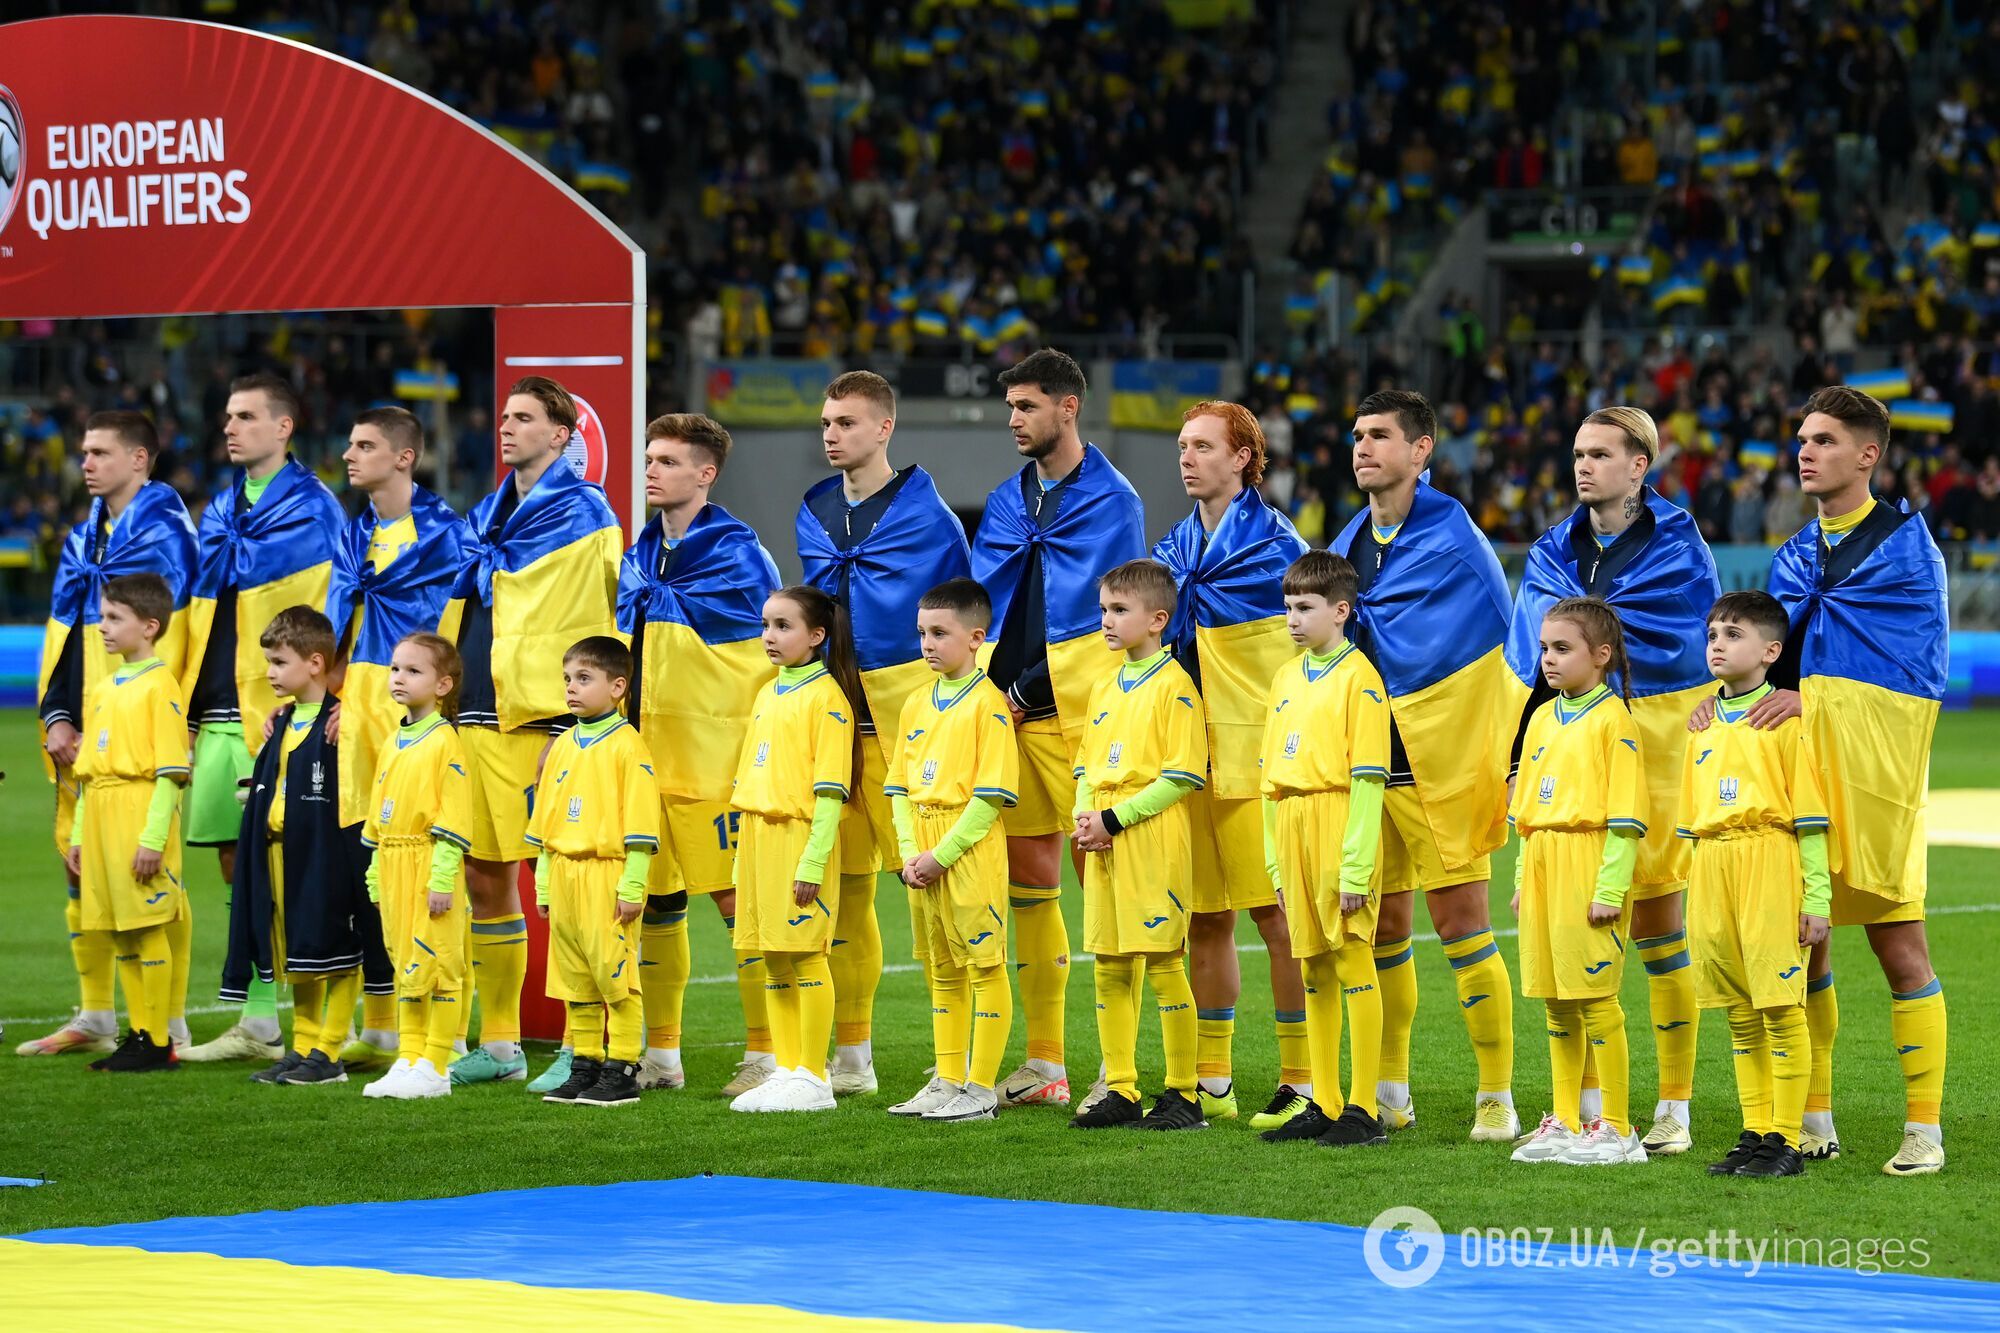 Штучний інтелект назвав рік, коли Україна виграє ЧЄ з футболу: кого збірна обіграє у фіналі